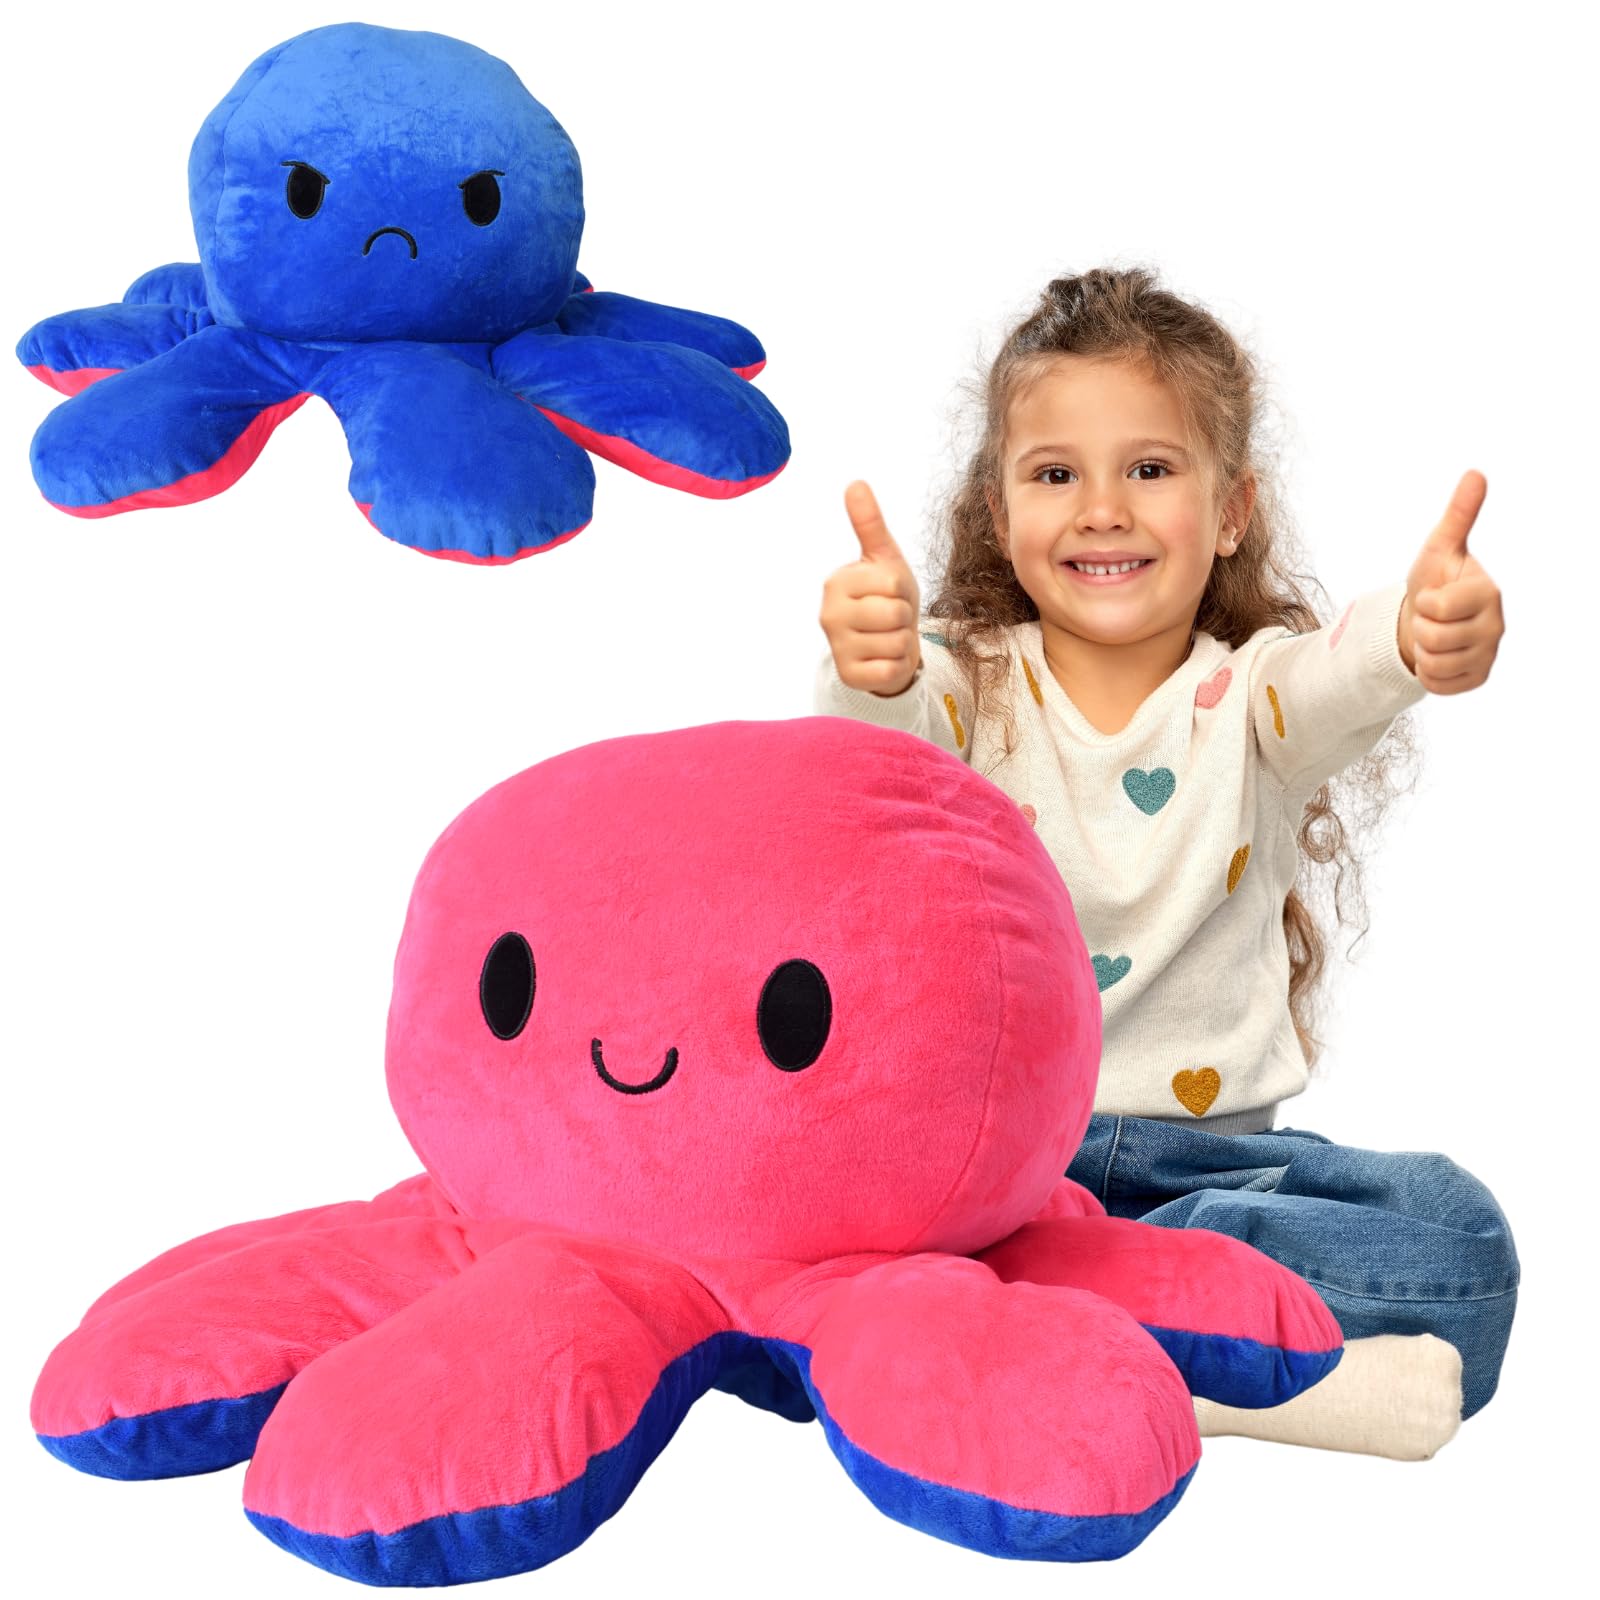 TE-Trend Kissen 80cm Wendekissen Wende Octopus Flip Plüschtier XXL Stimmungs Kuscheltier mit 2 Gesichtern Stofftier Geschenk Rosa Blau